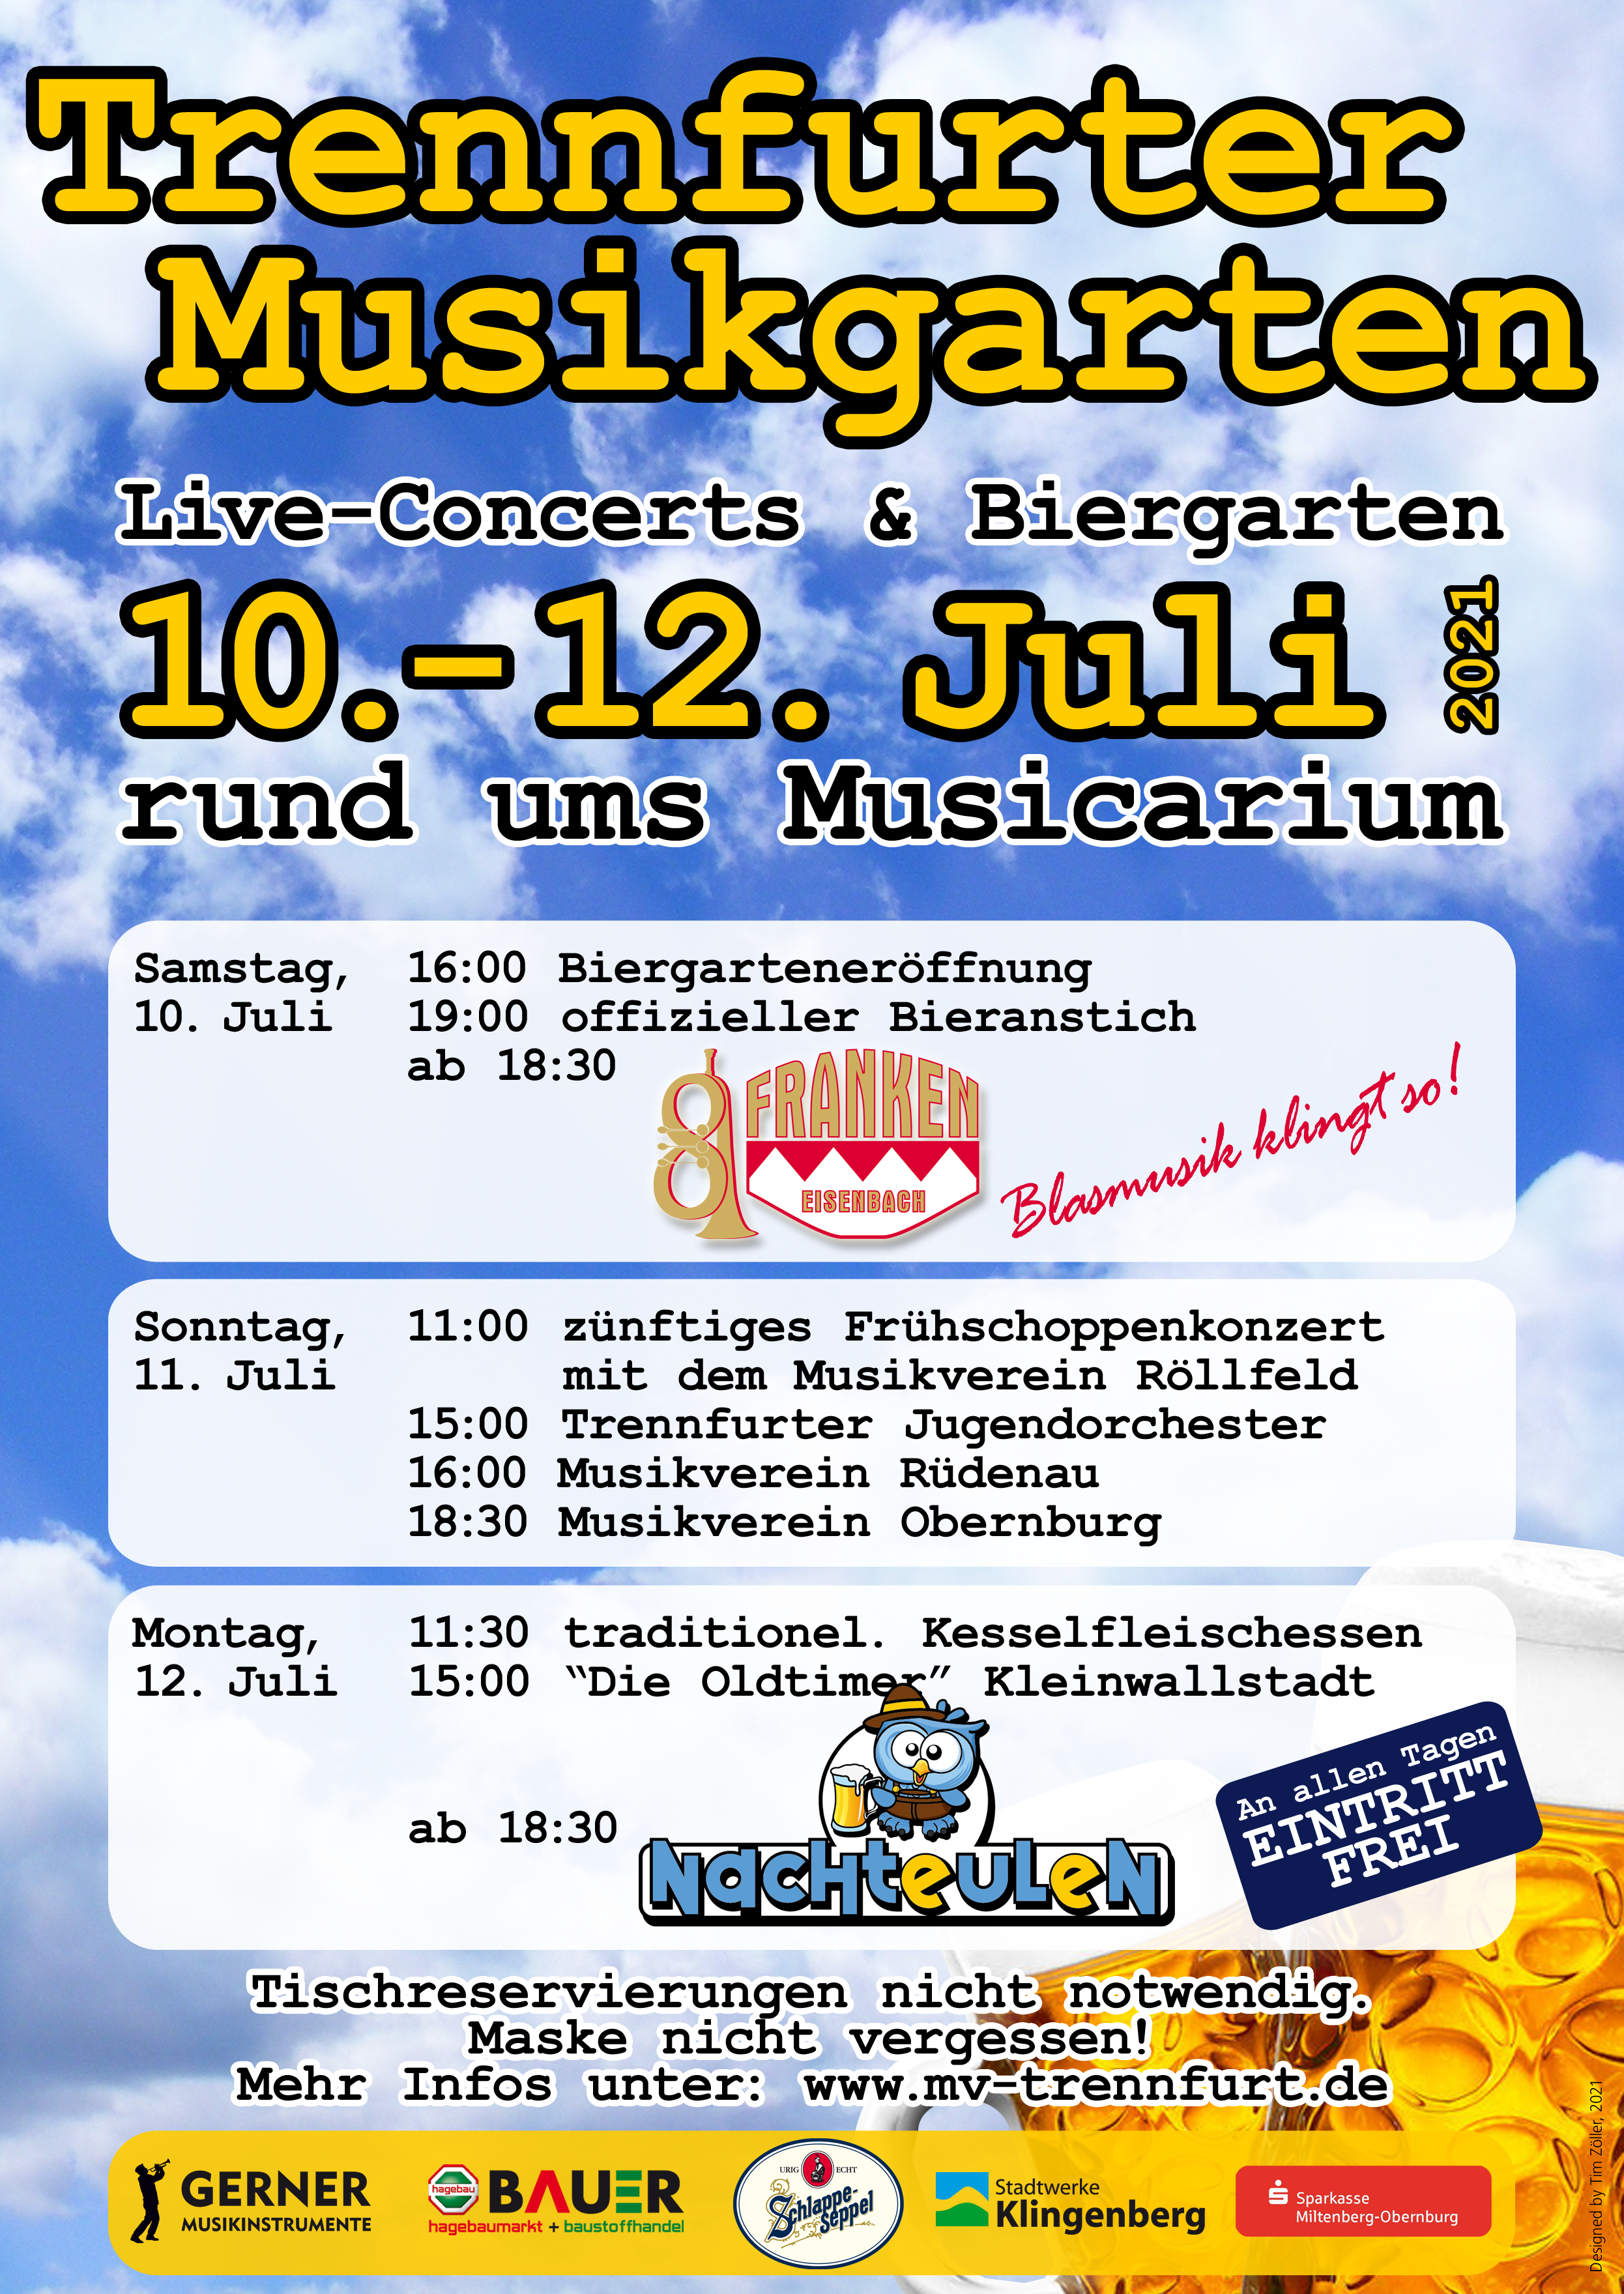 Trennfurter Musikgarten - 10. bis 12. Juli 2021 - Live-Concerts im großen Biergarten rund ums Musicarium